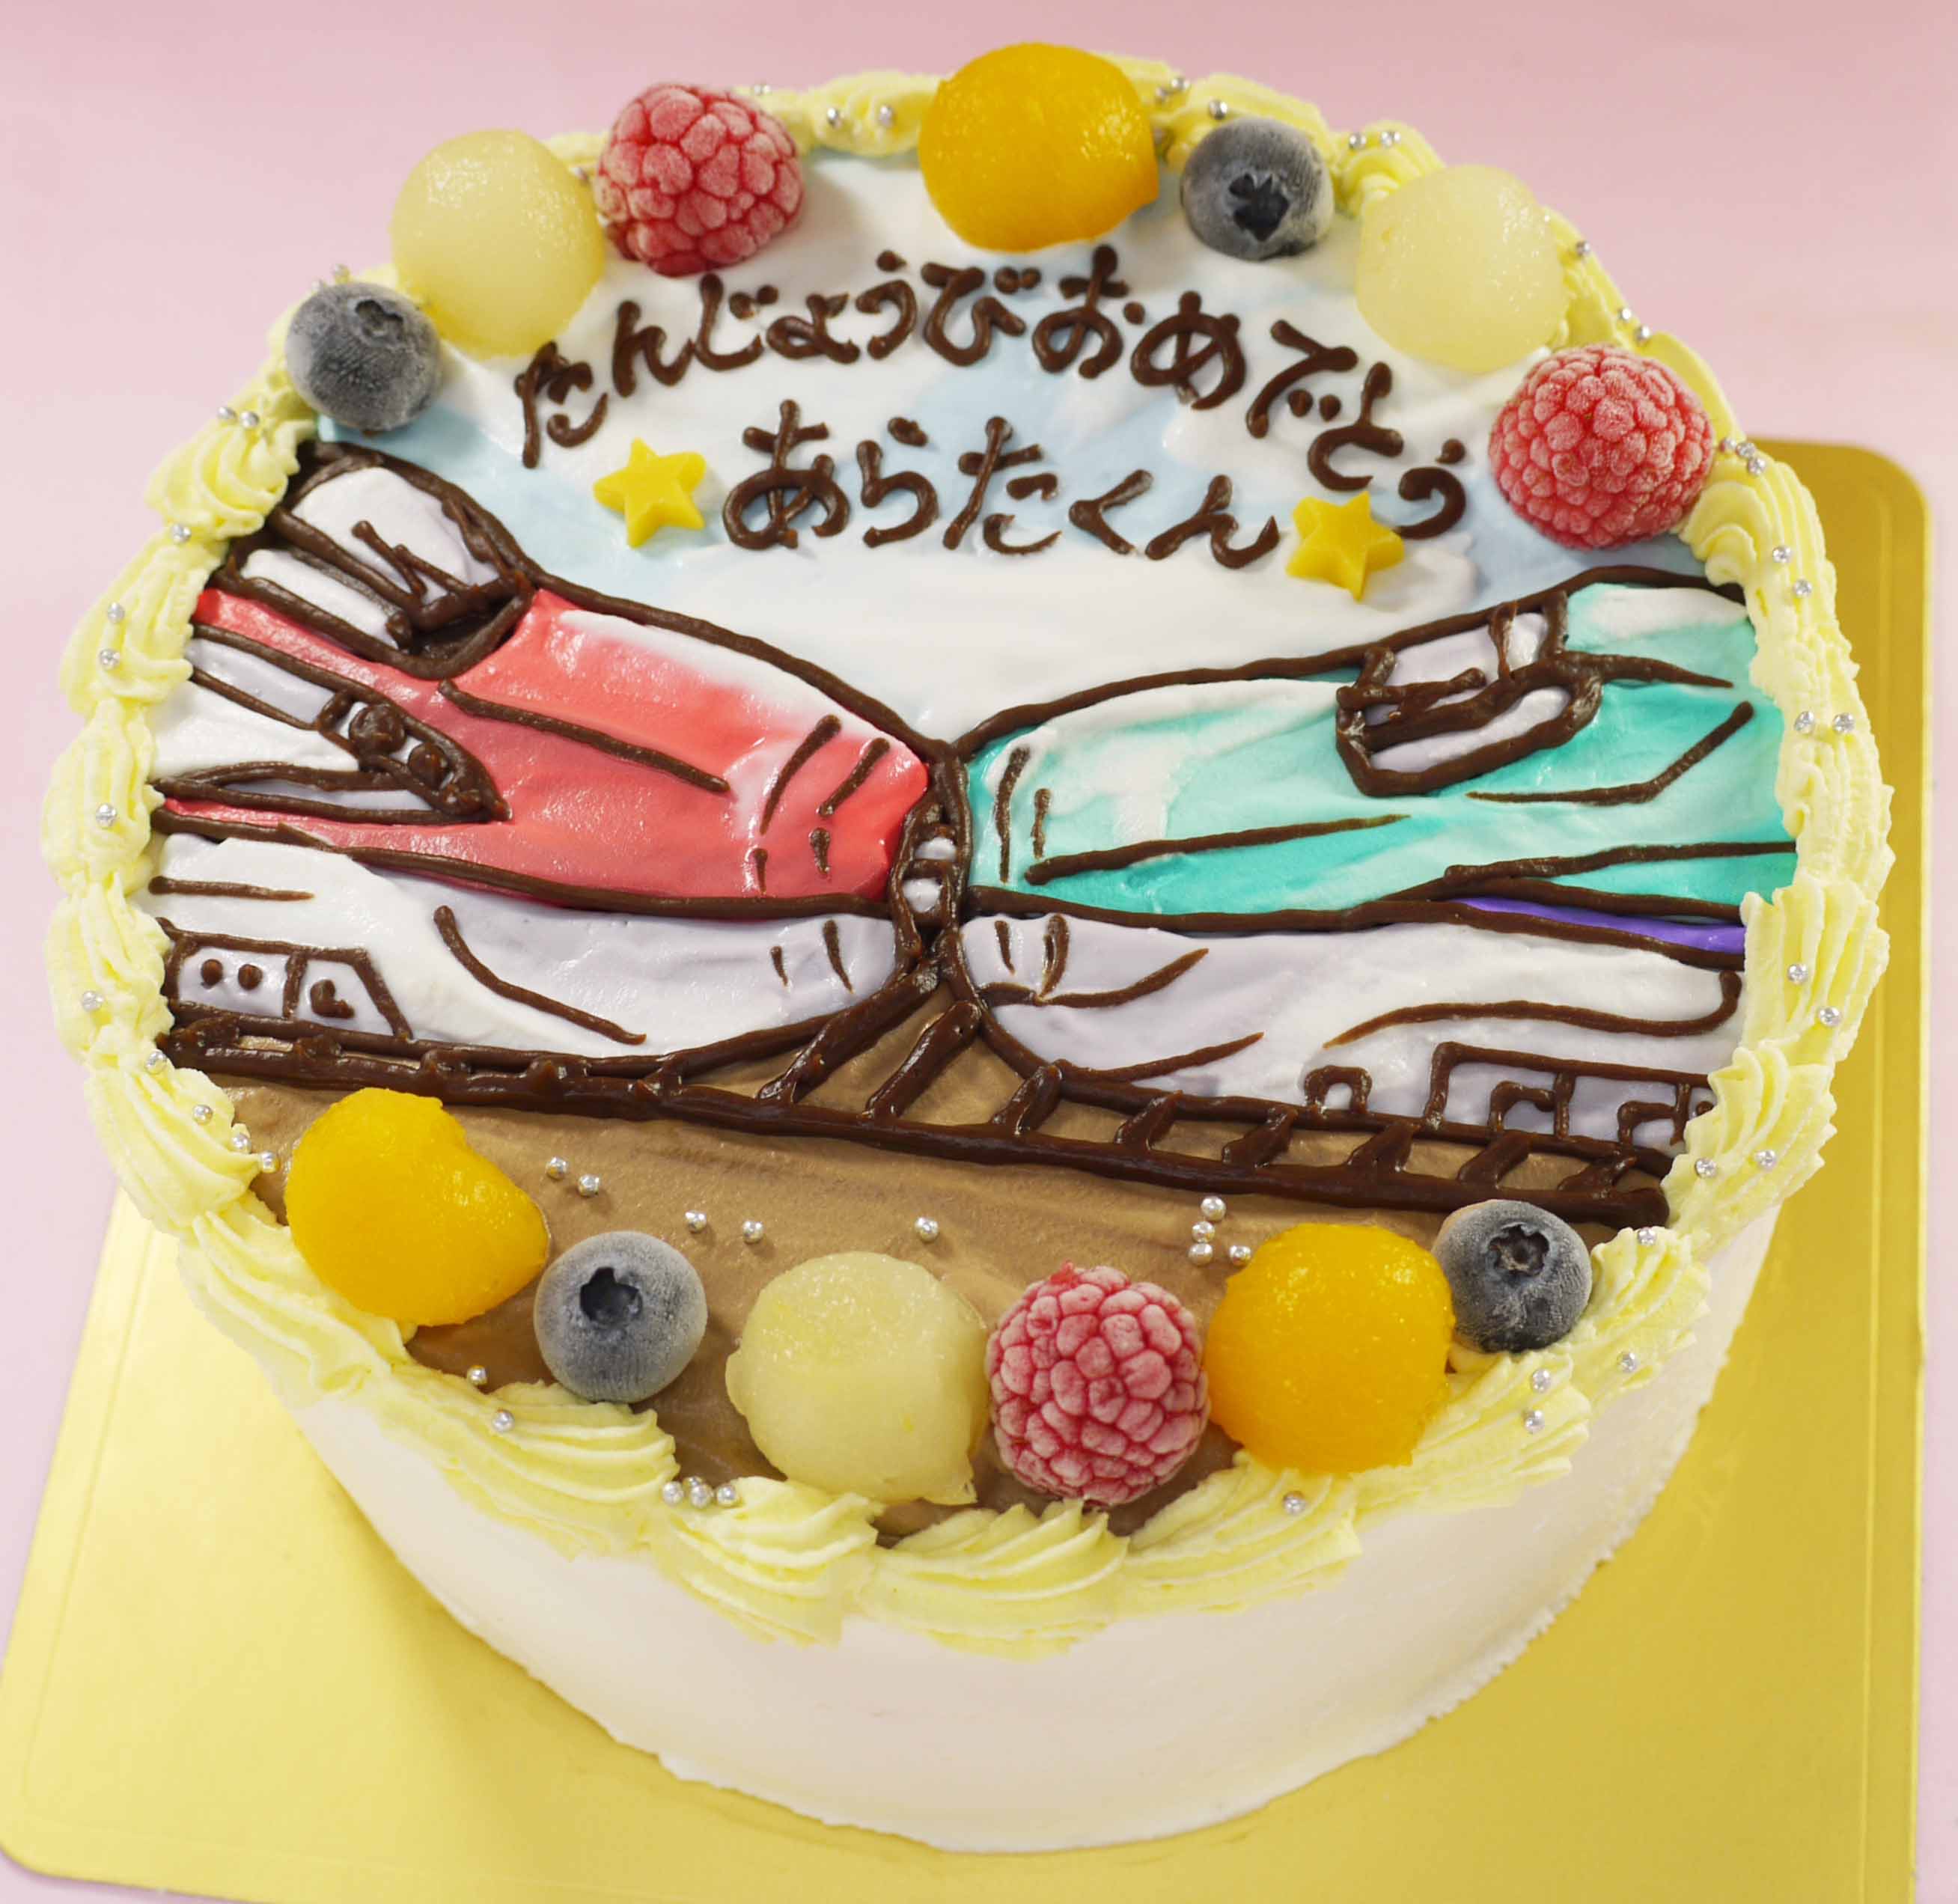 連結した新幹線のイラストケーキ